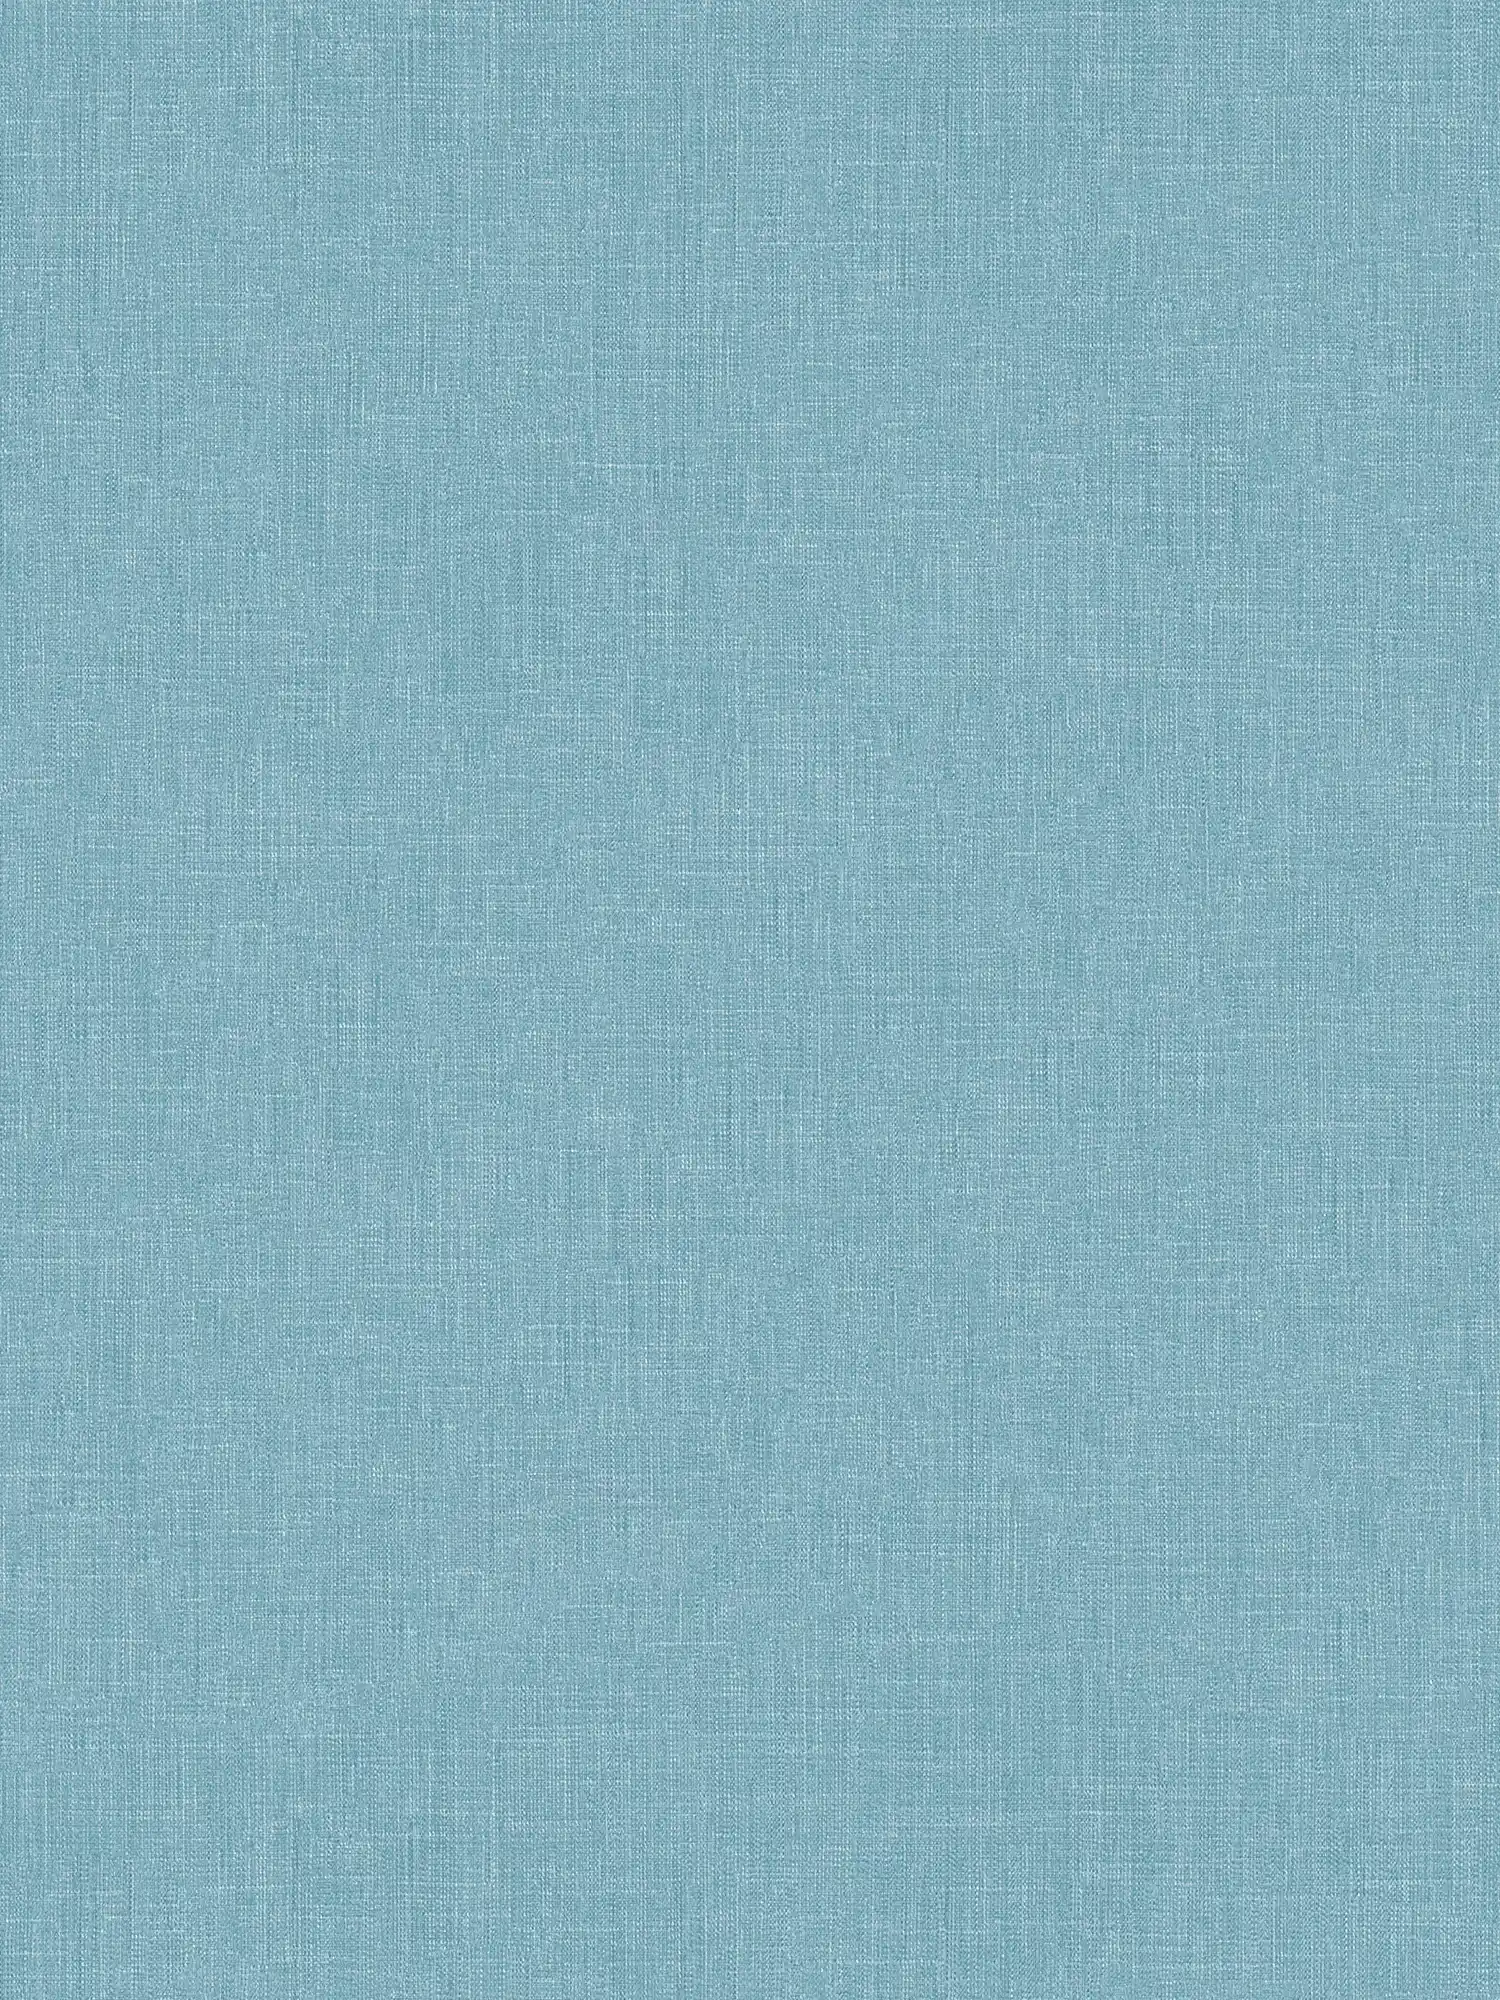 Papel pintado no tejido azul moteado con estructura textil en estilo bouclé
